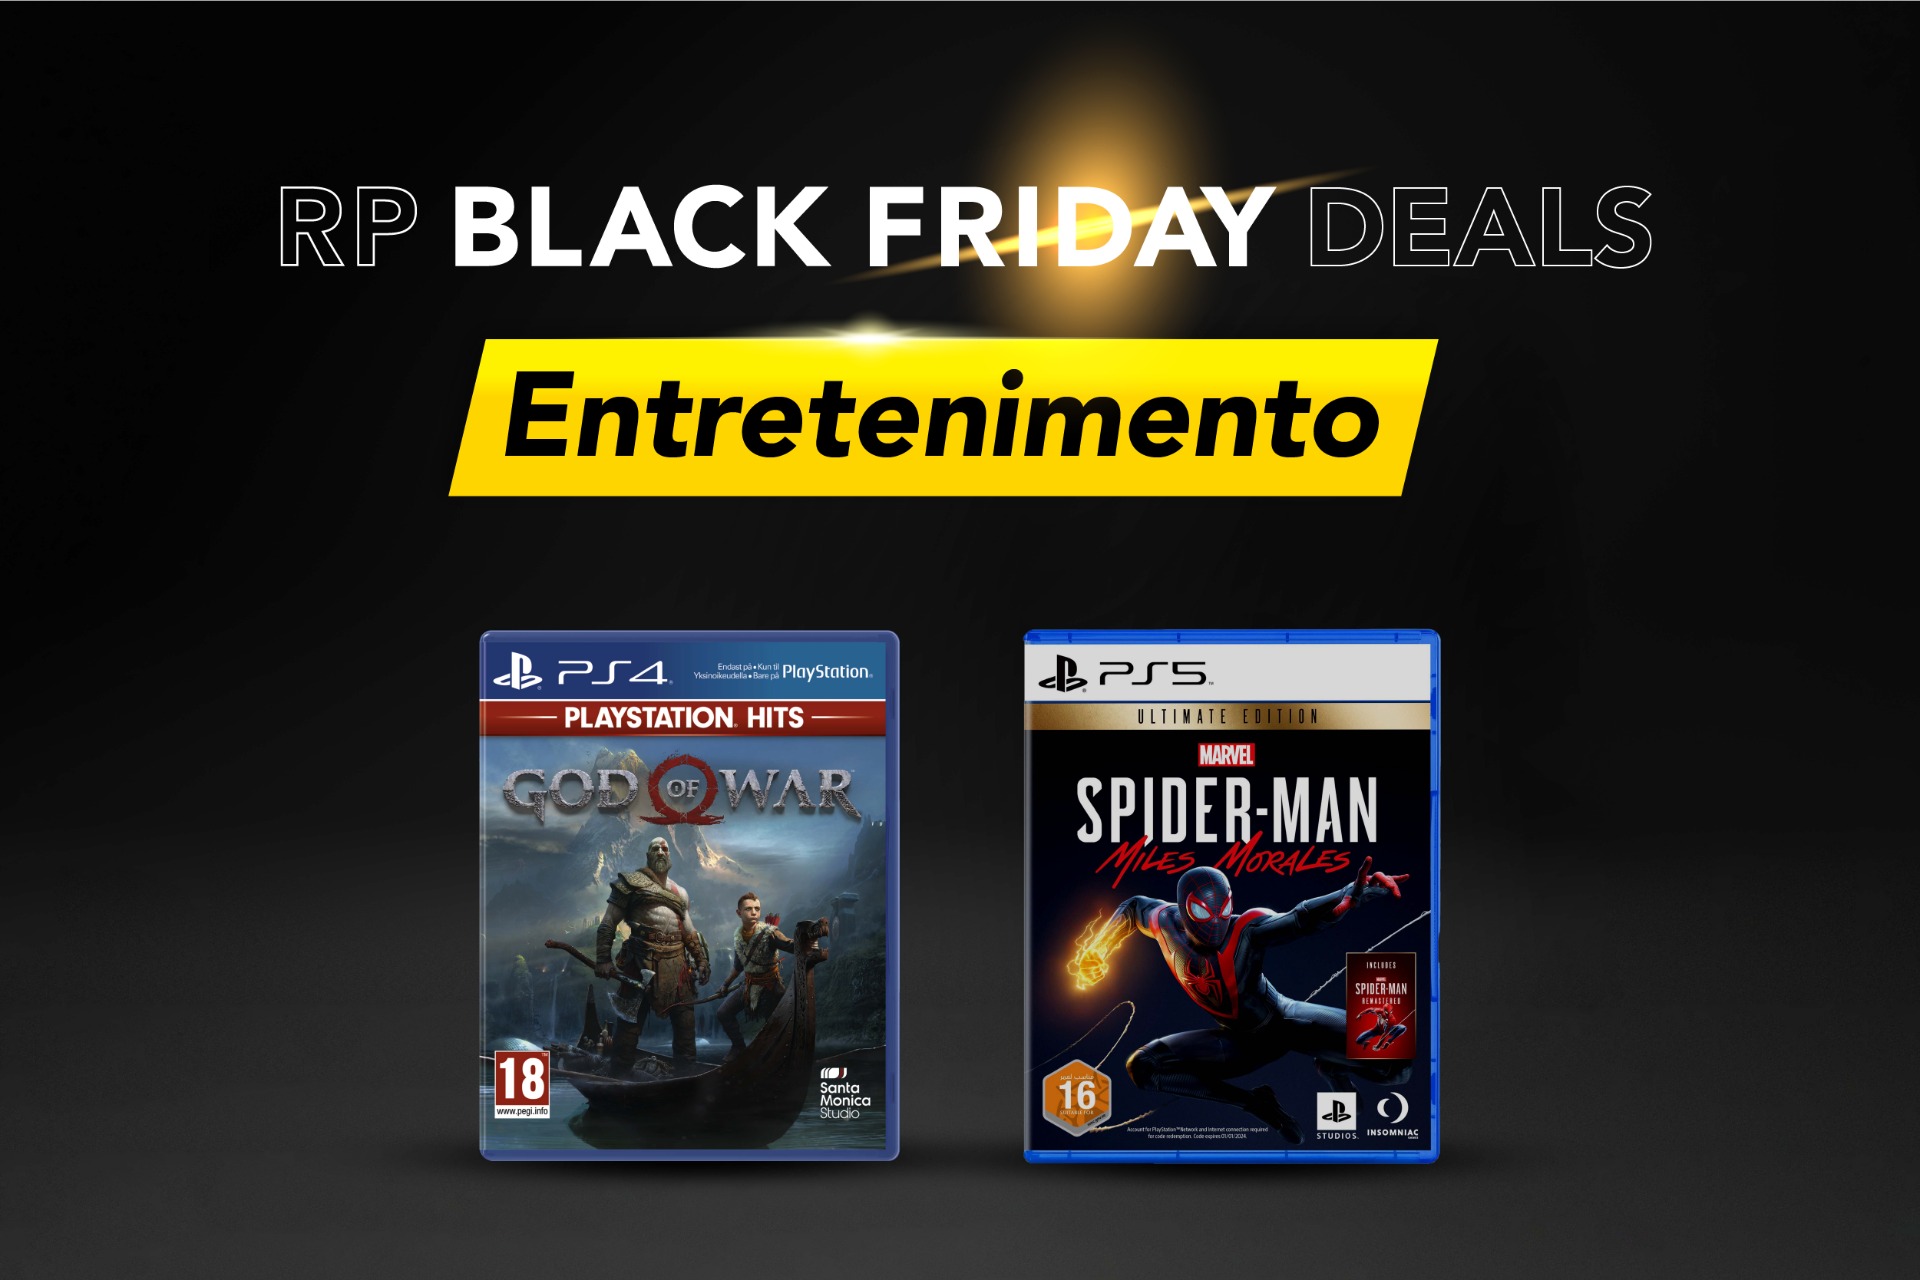 Jogos atuais de PS4 para comprar nesta Black Friday